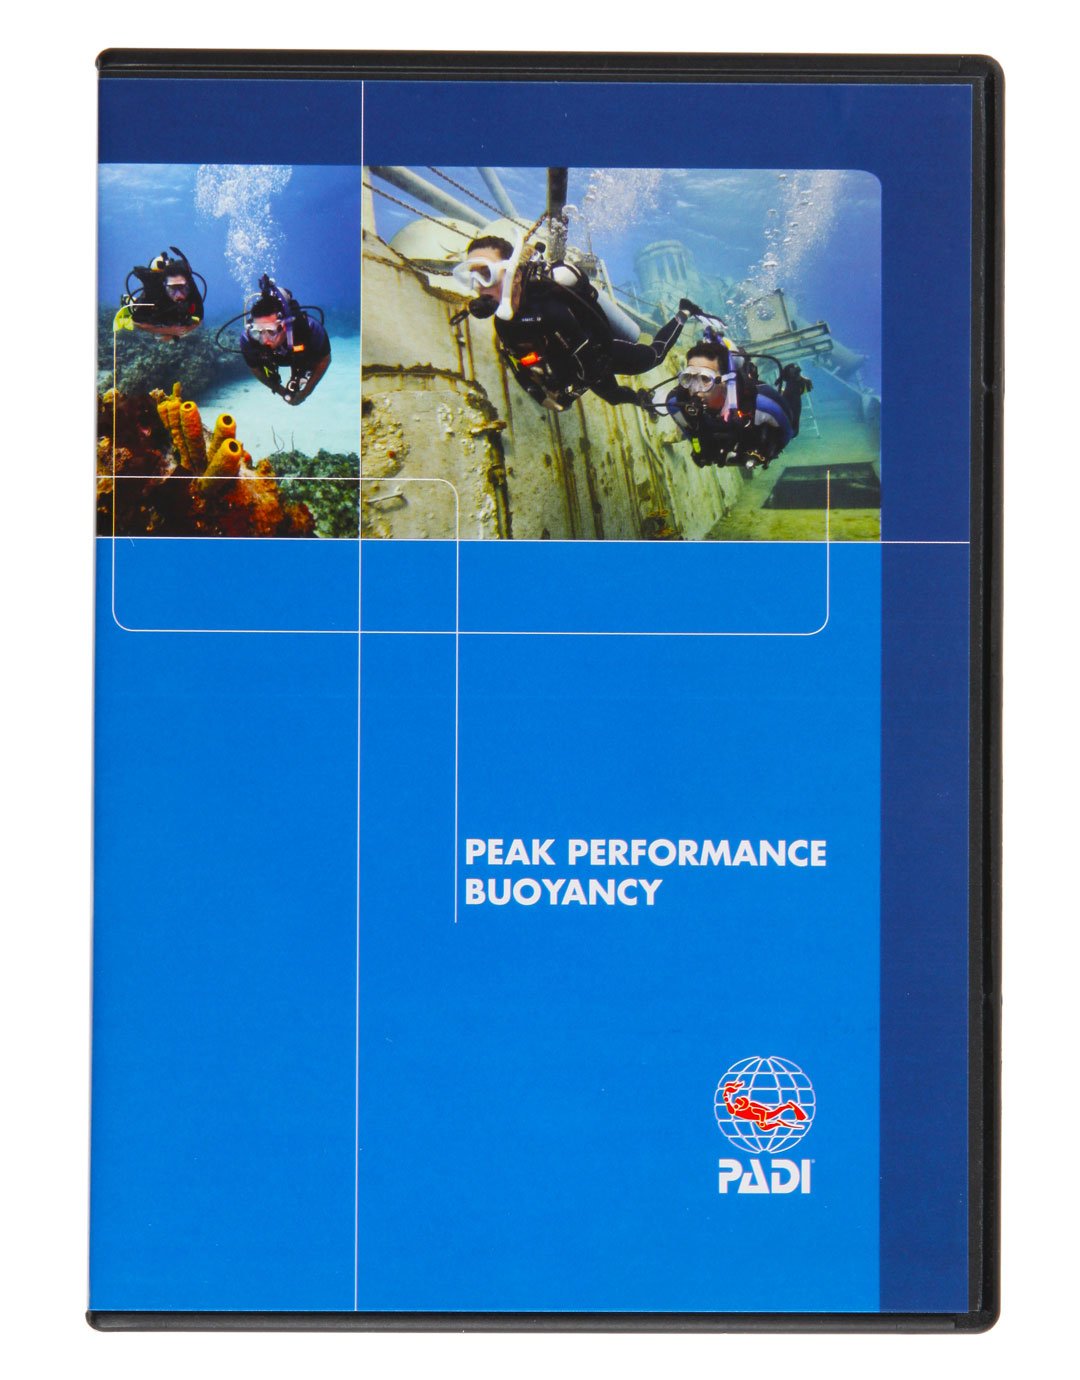 Image of Peak Performance Buoyancy DVD